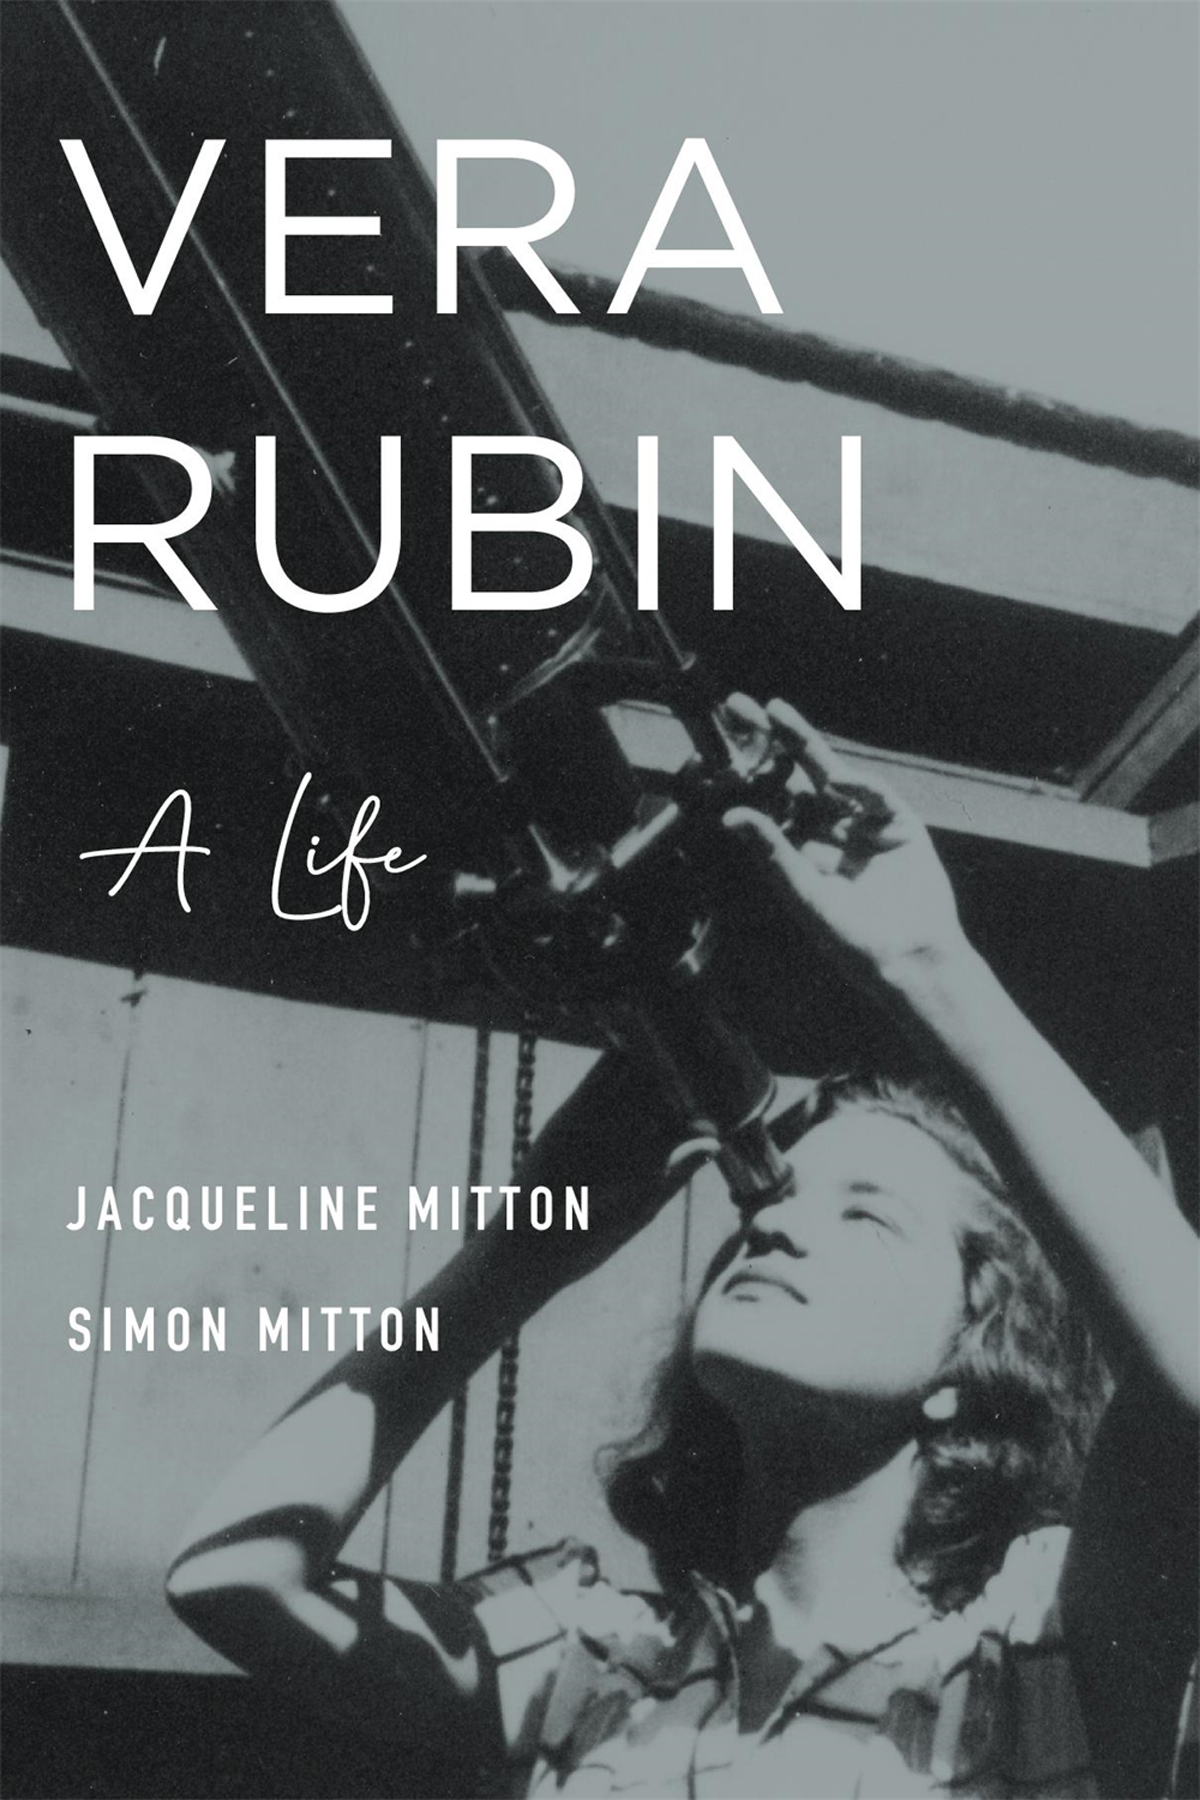 VERA RUBIN a life JACQUELINE MITTON SIMON MITTON BELKNAP PRESS OF - photo 1